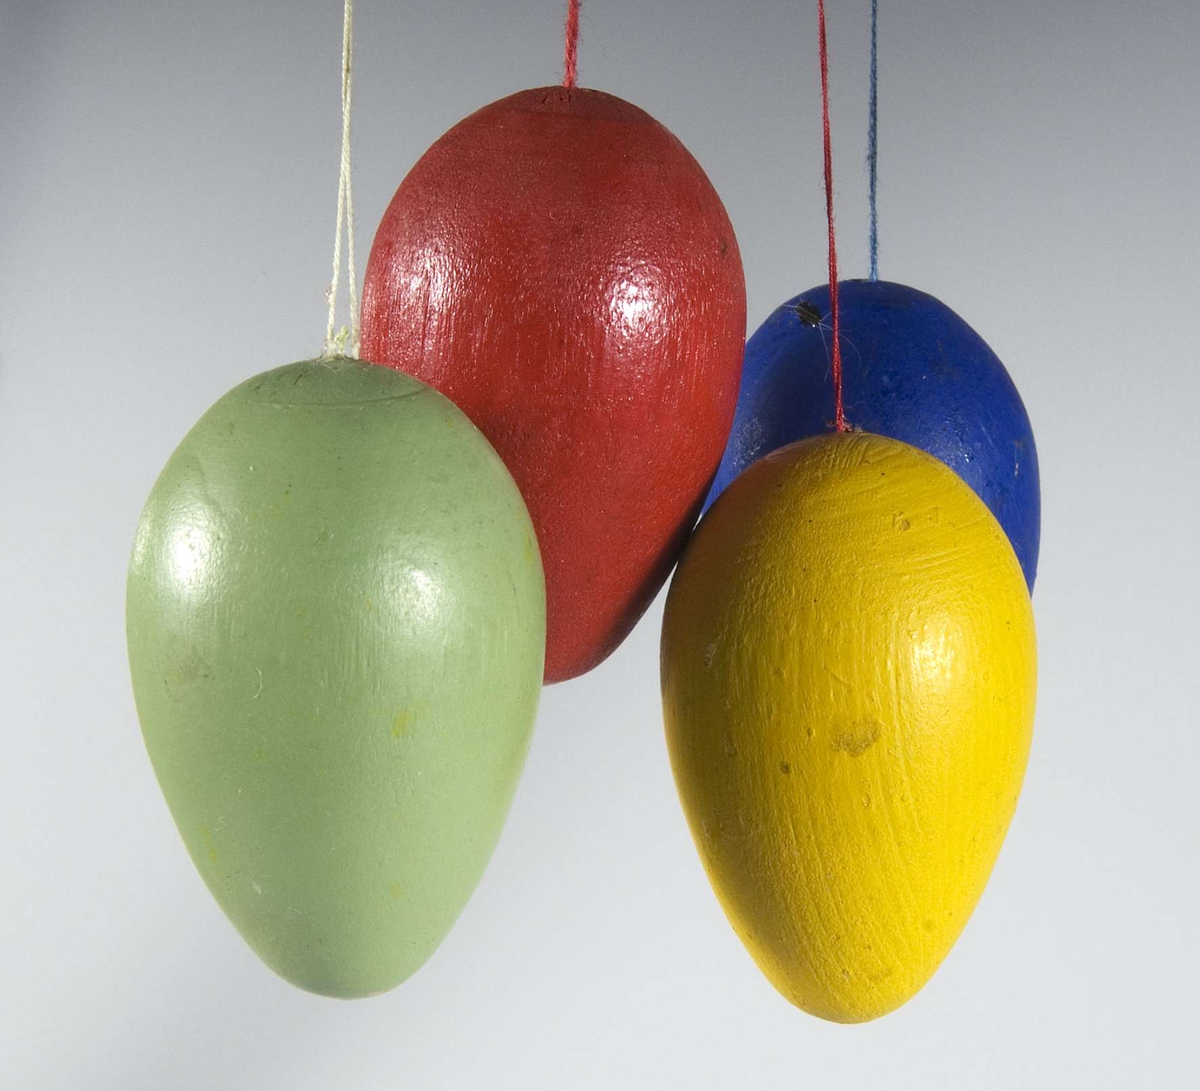 18 små ägg av trä målade i olika färger; gult, rött, blått och grönt med en liten trådögla för upphängning i påskris. Förvaras i pappask med påskrift: PÅSK.

